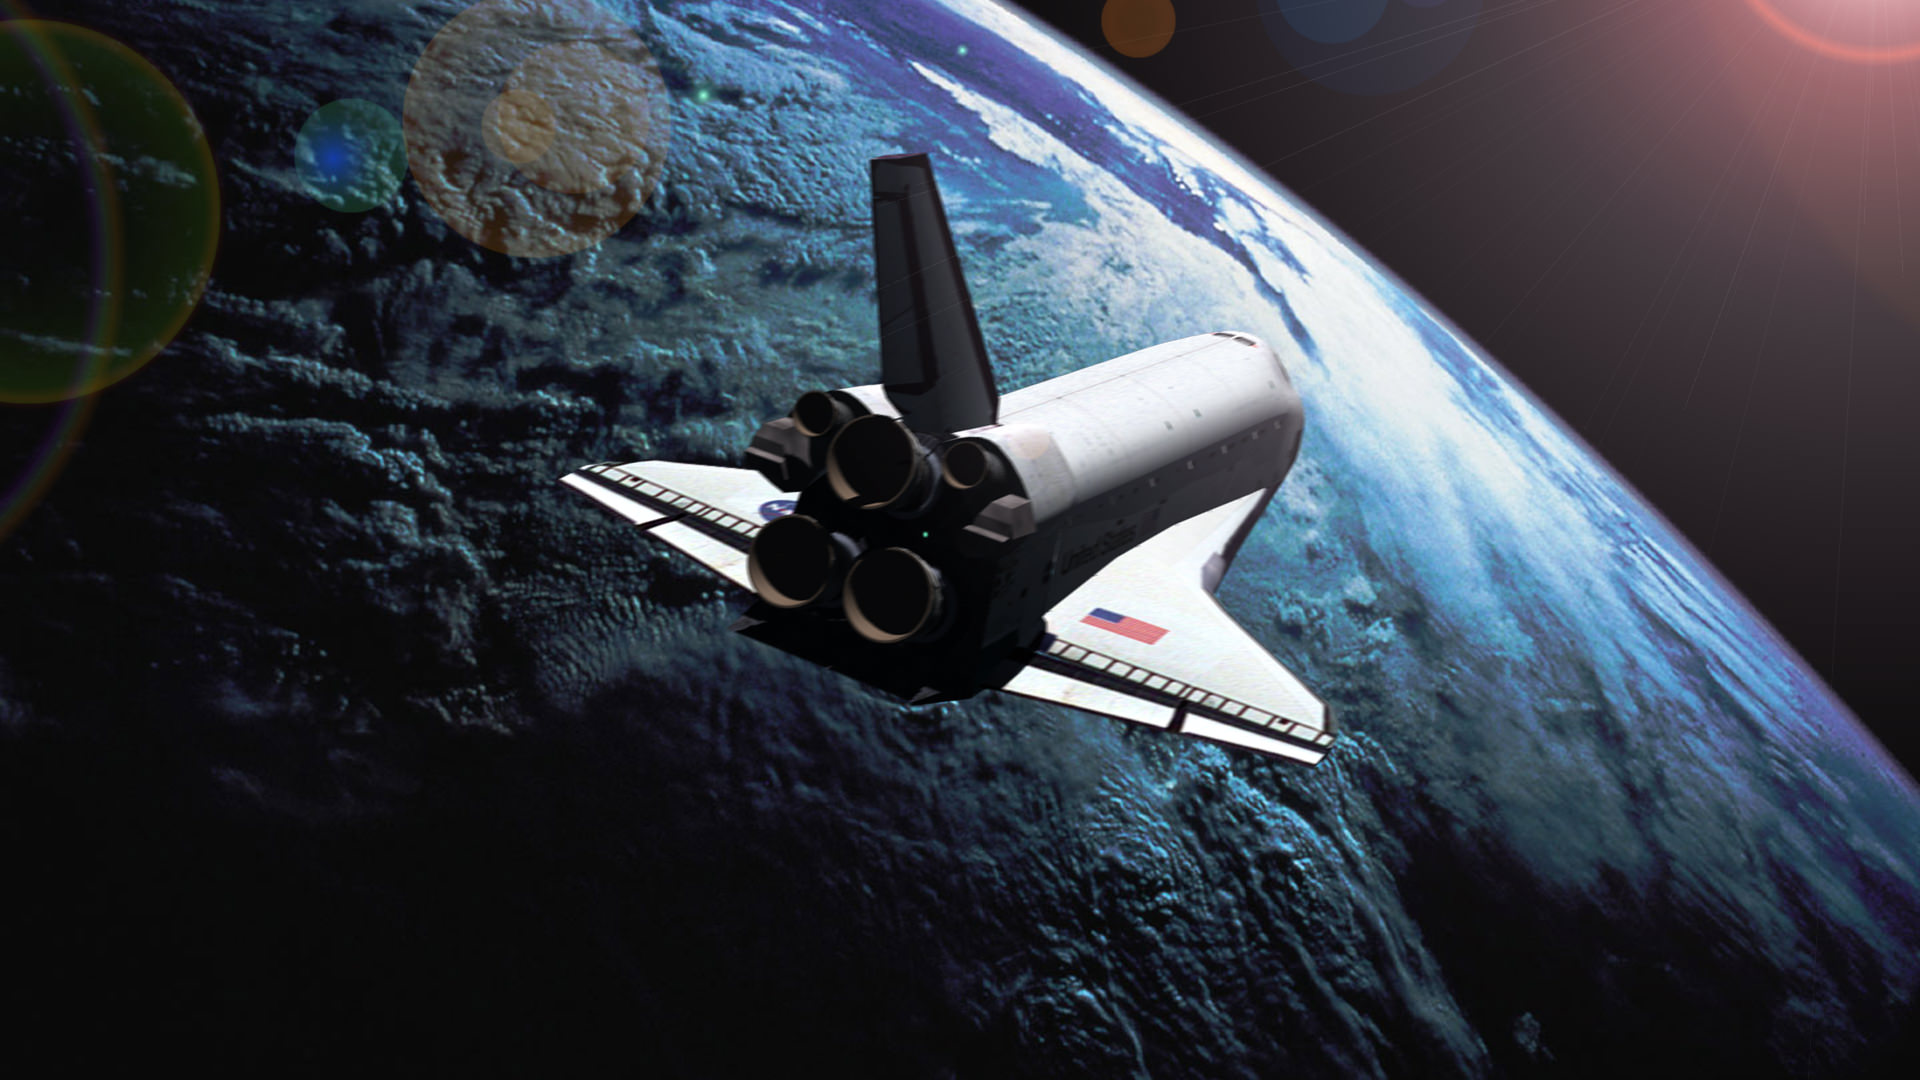 Space Shuttle in Orbit